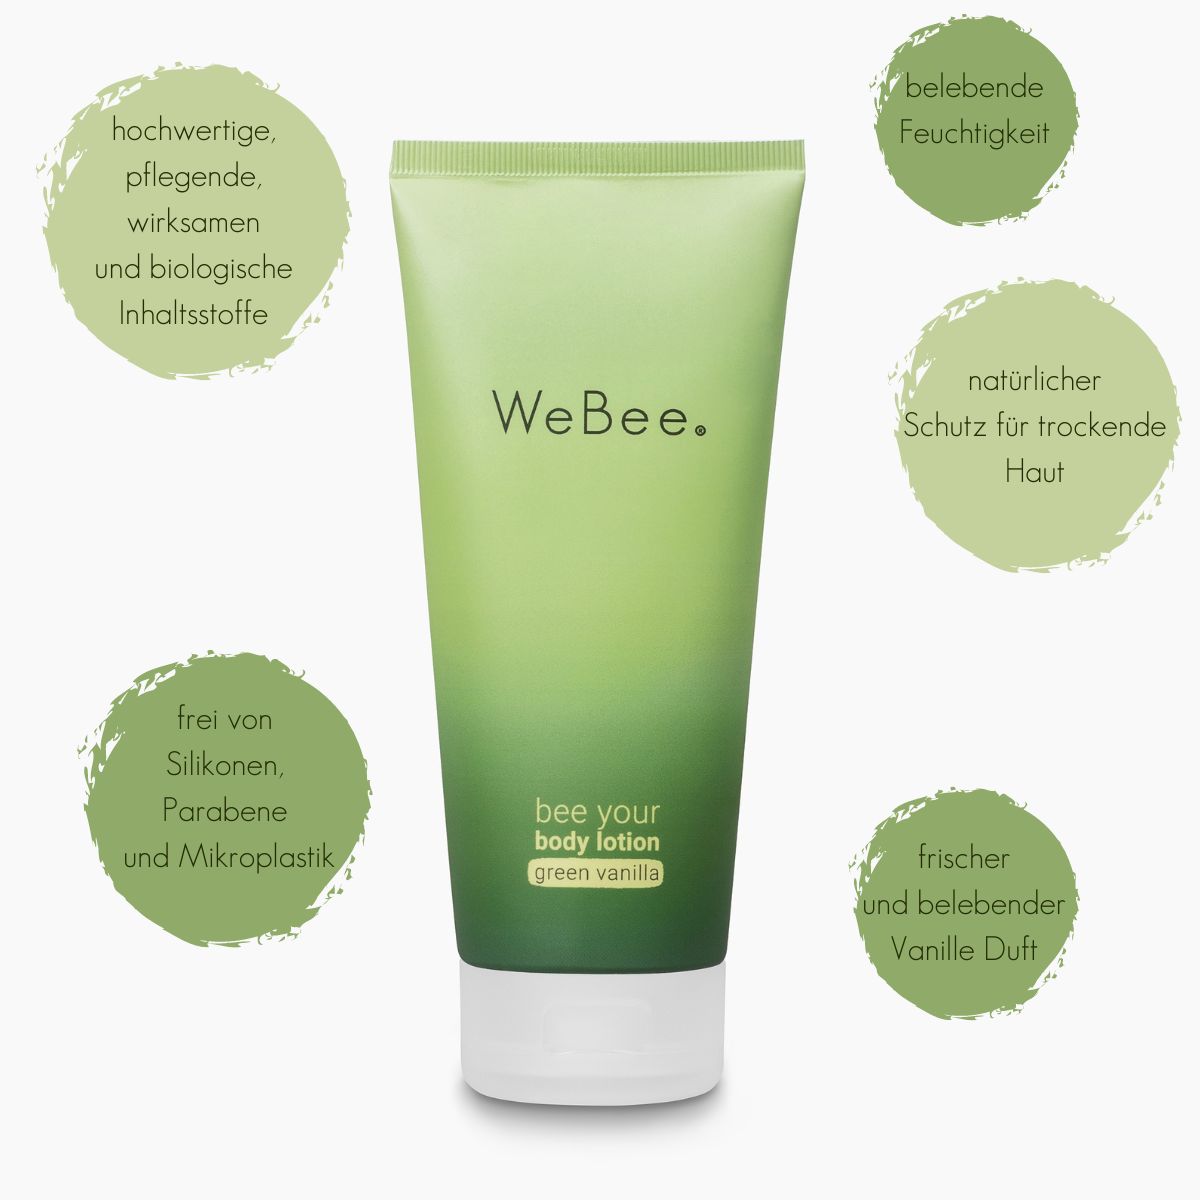 Ihr Geschenk: WeBee bee your body lotion - green vanilla